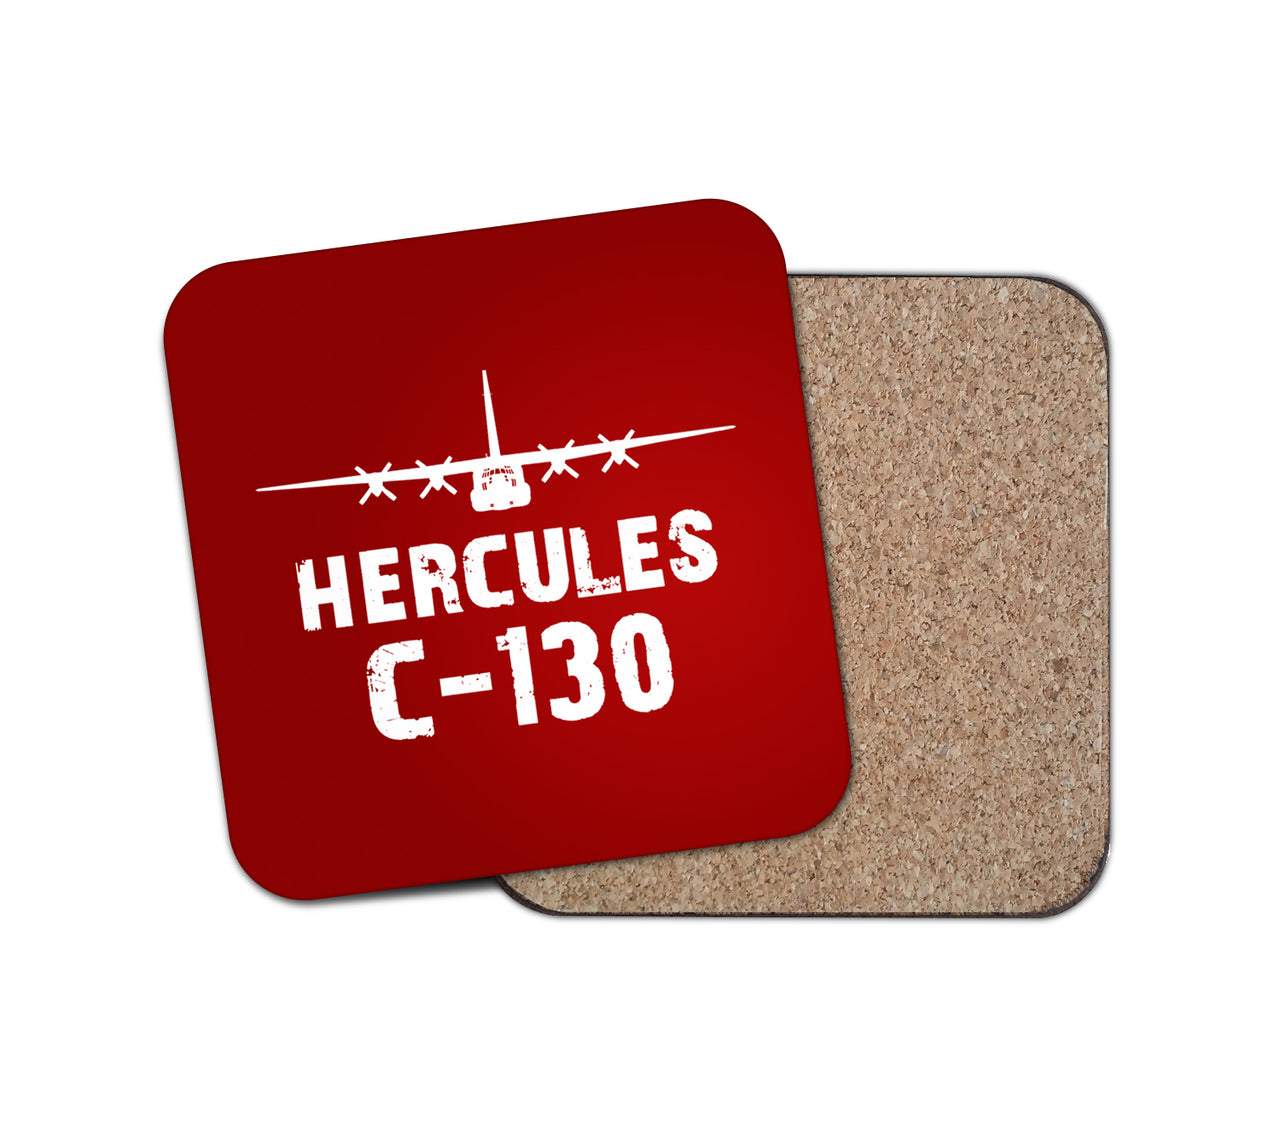 Hercules C-130 & Plane Designed Coasters